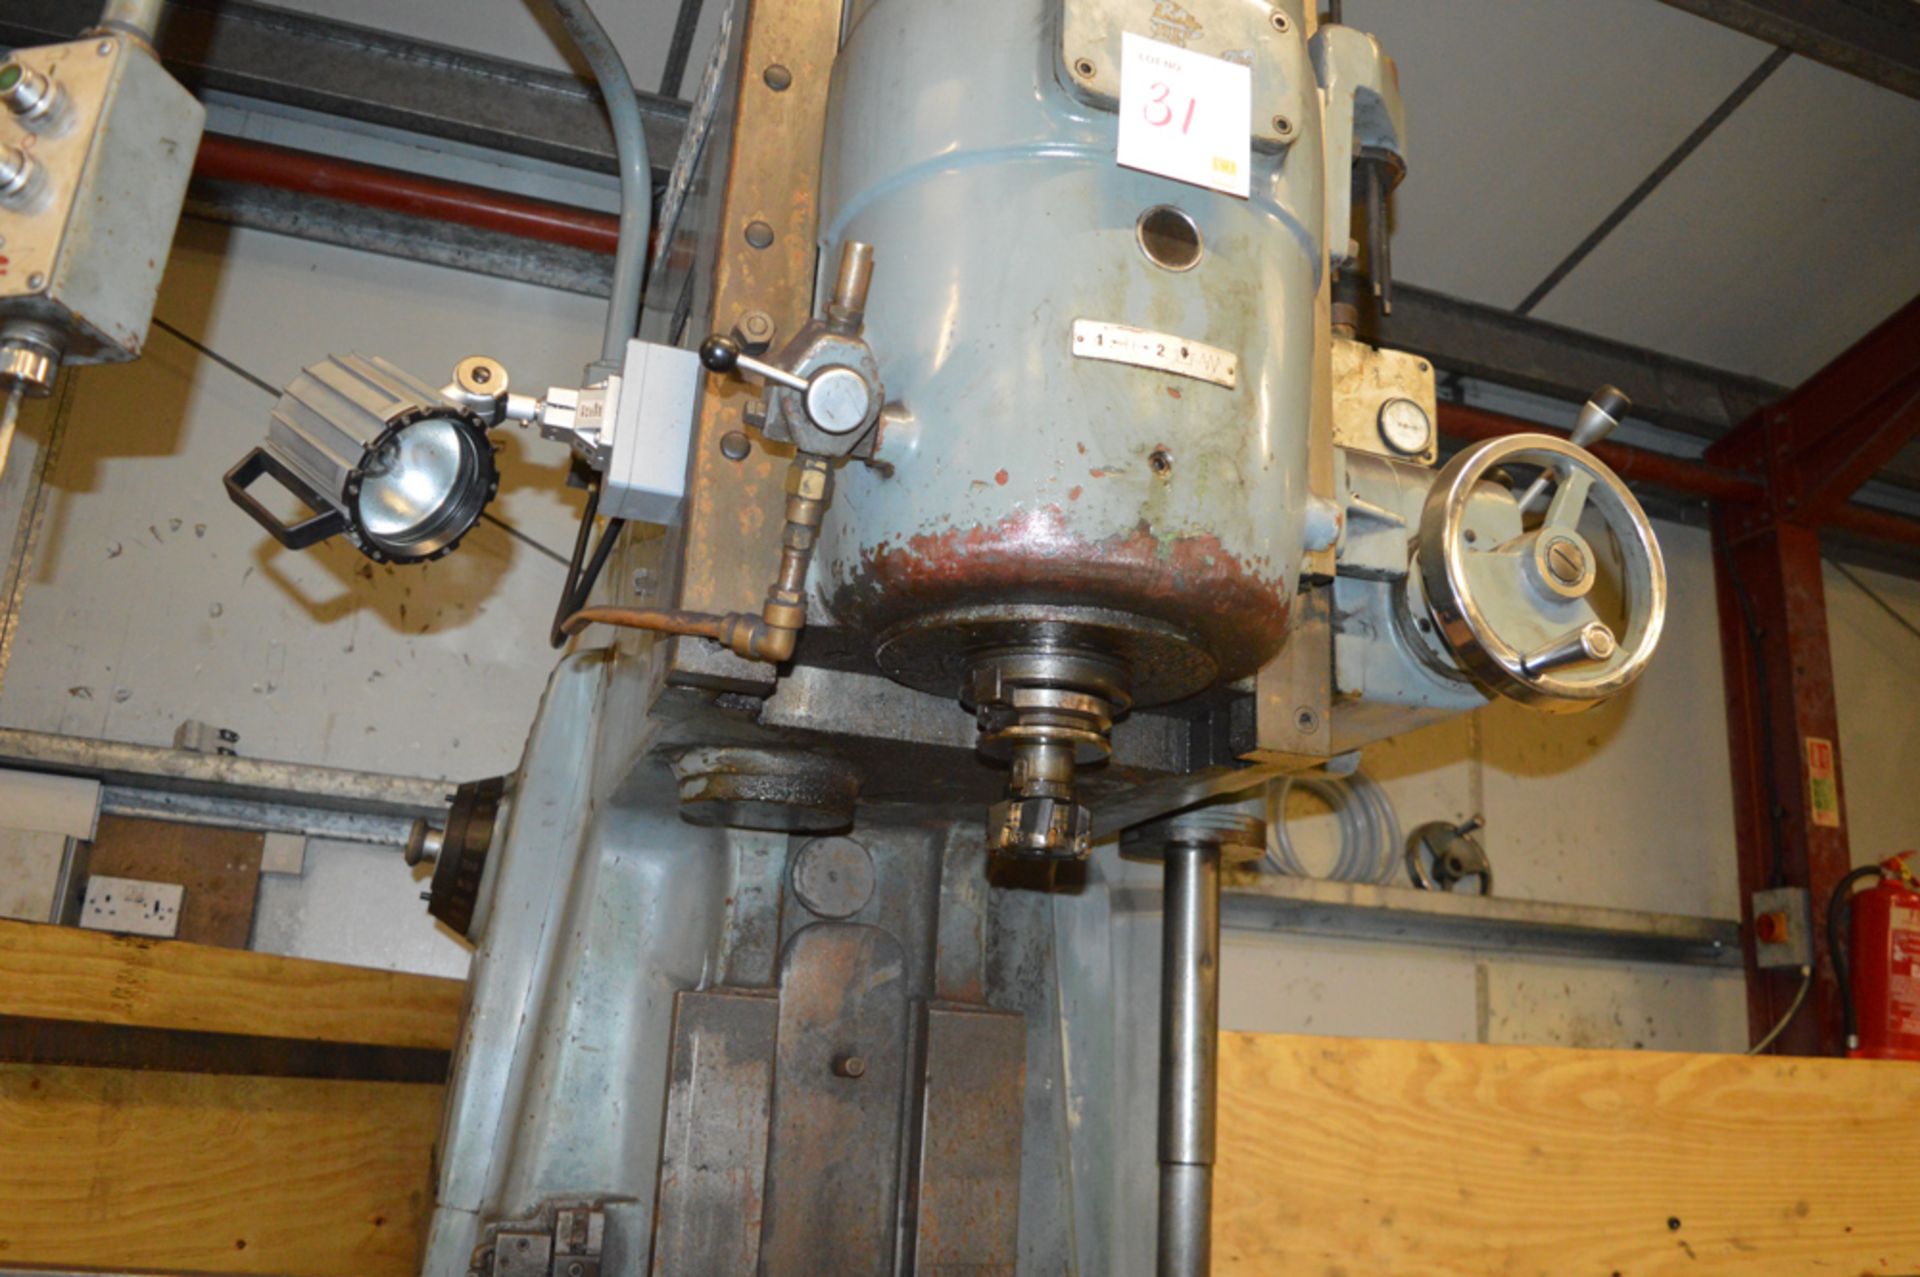 Cincinnati Milacron 420-16 EDO vertical milling machine Year: 1979 S/N: IIA4VIAFE-5 - Image 6 of 6